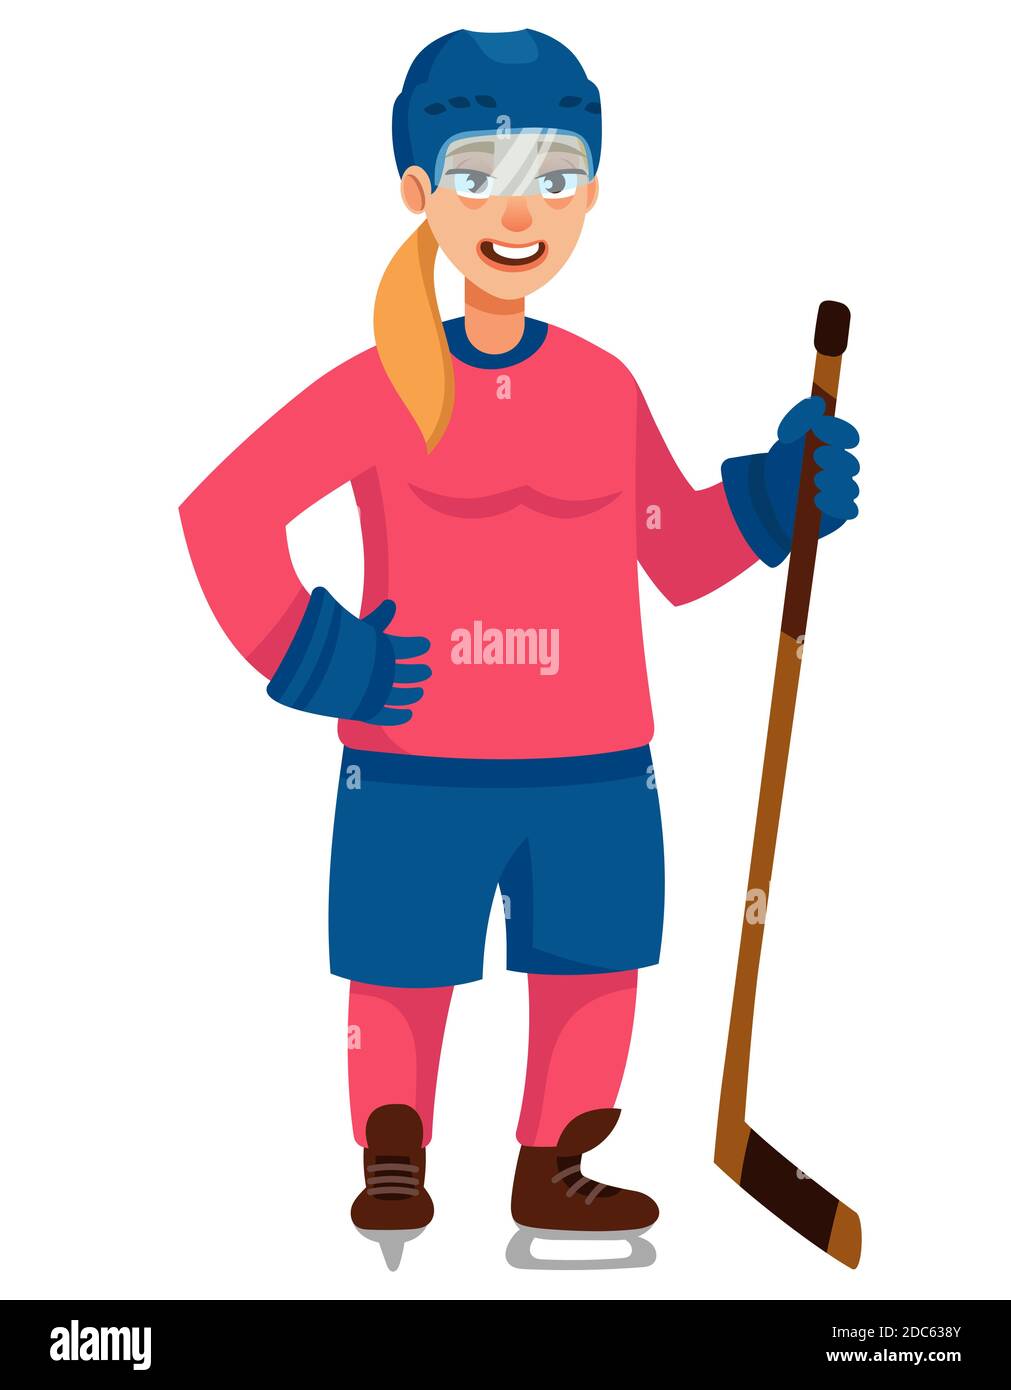 Joueur de hockey debout. Personnage féminin de style dessin animé. Illustration de Vecteur